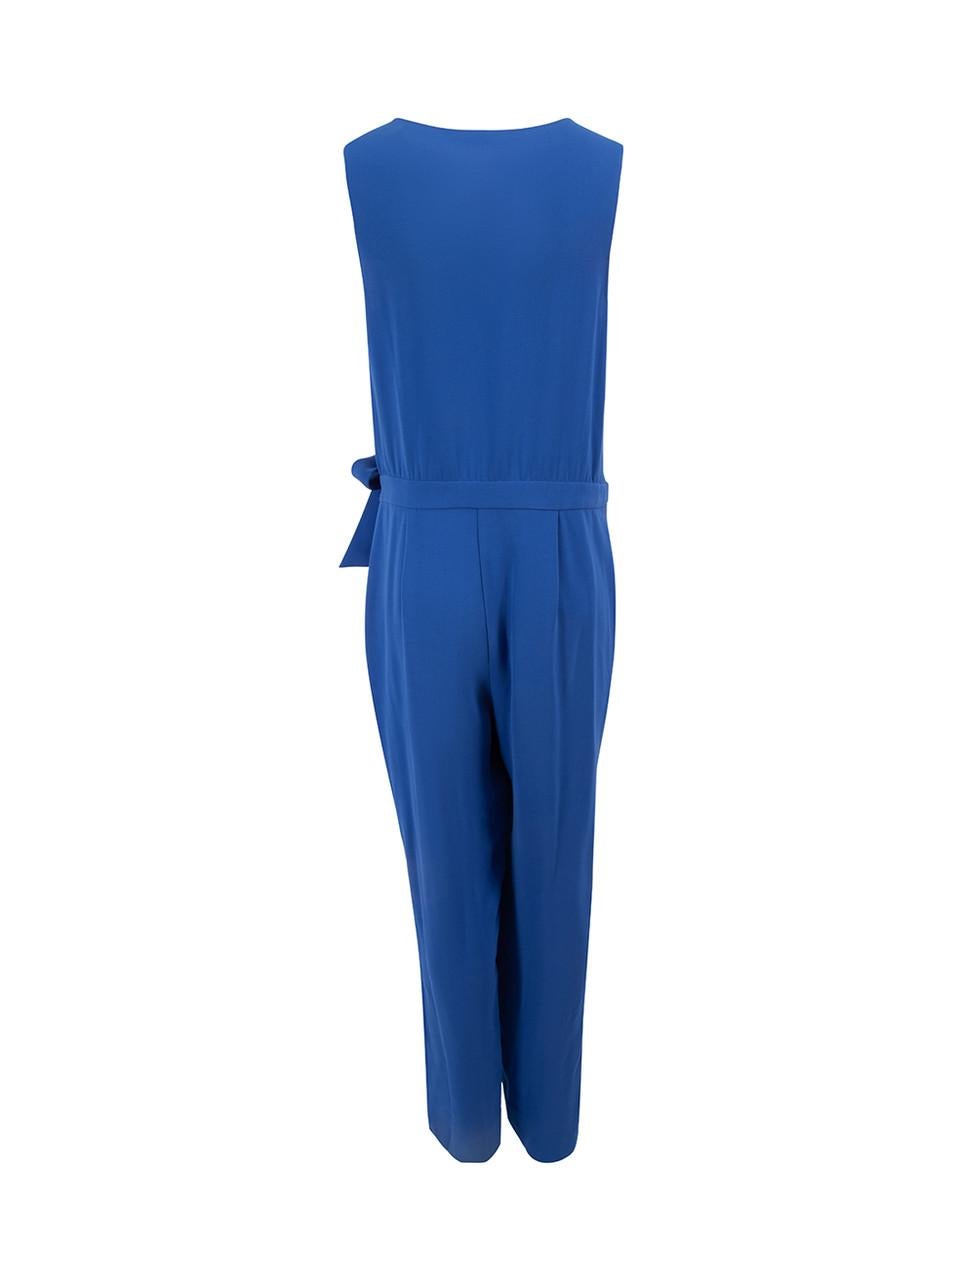 Diane von Furstenberg Blue Tie Waistband Sleeveless Jumpsuit Size XXL In Good Condition For Sale In London, GB